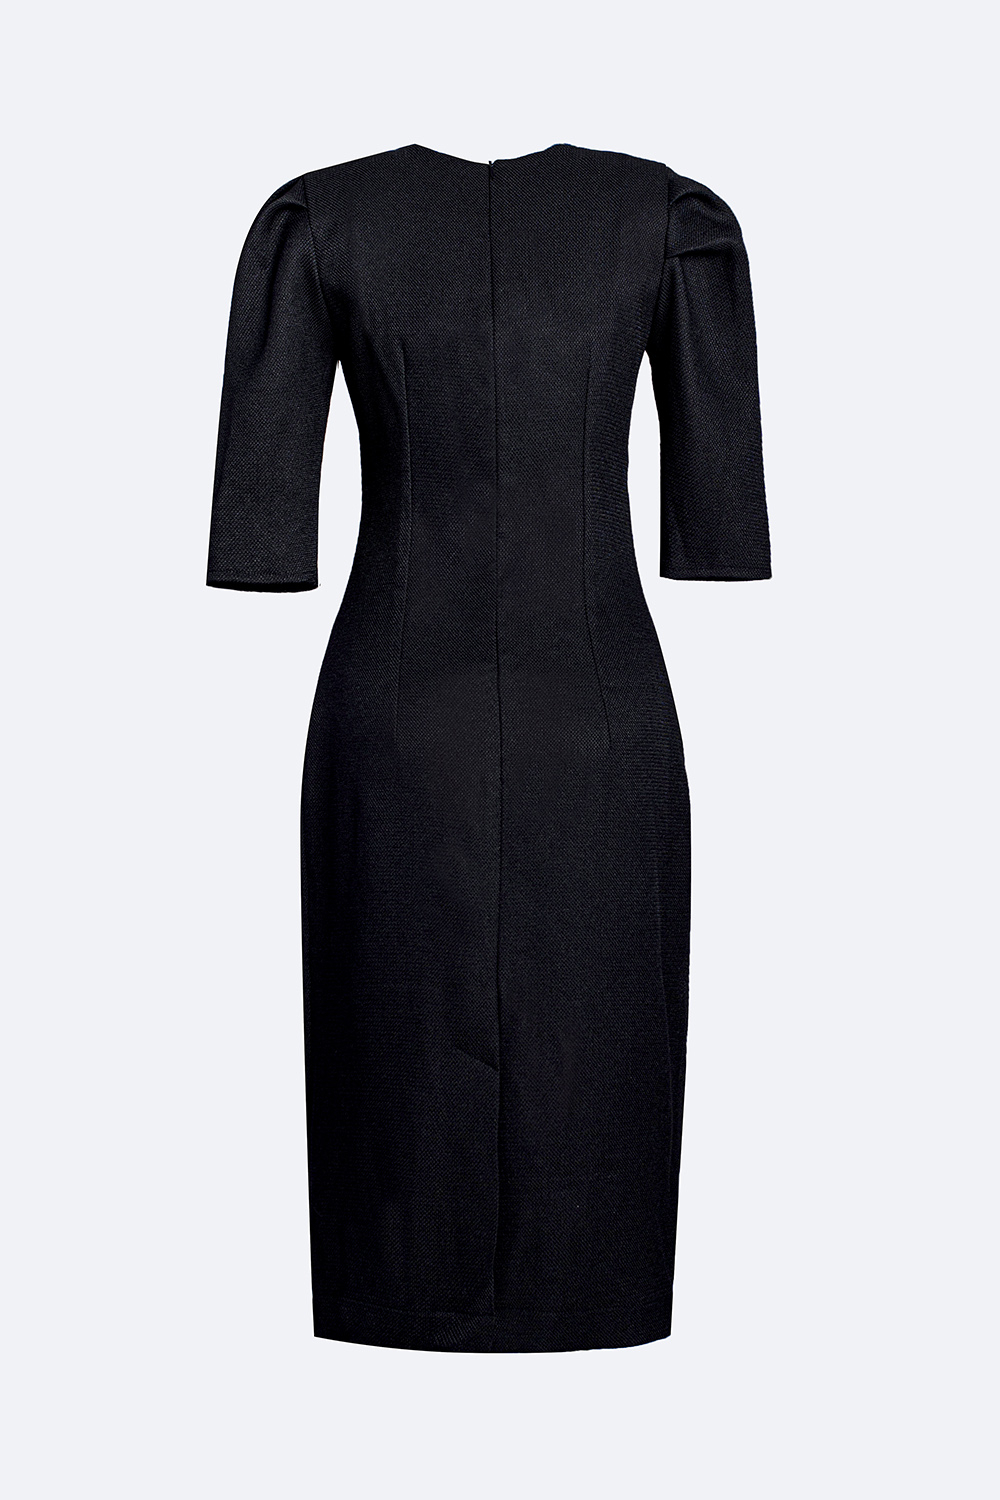 Đầm đen ôm body tay lỡ cổ vuông KK140-24 | Thời trang công sở K&K ...